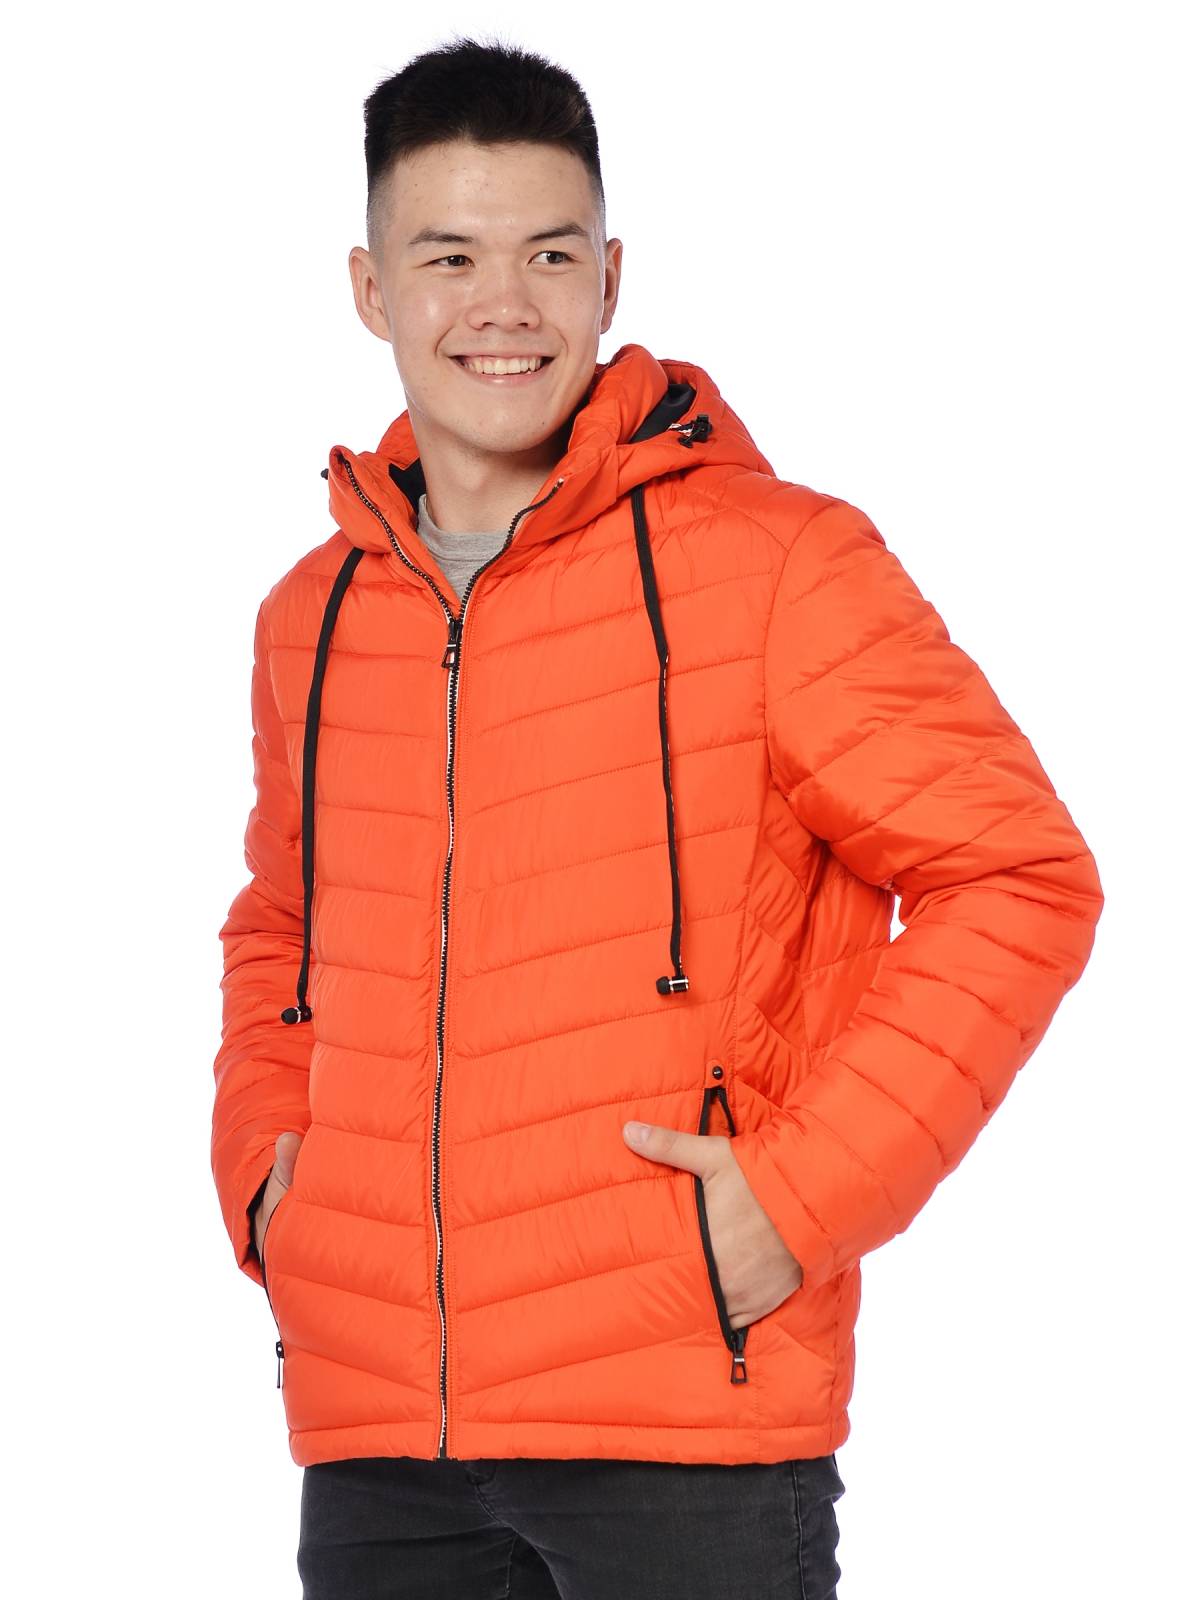 Куртка мужская Indaco 3795 оранжевая 48 RU